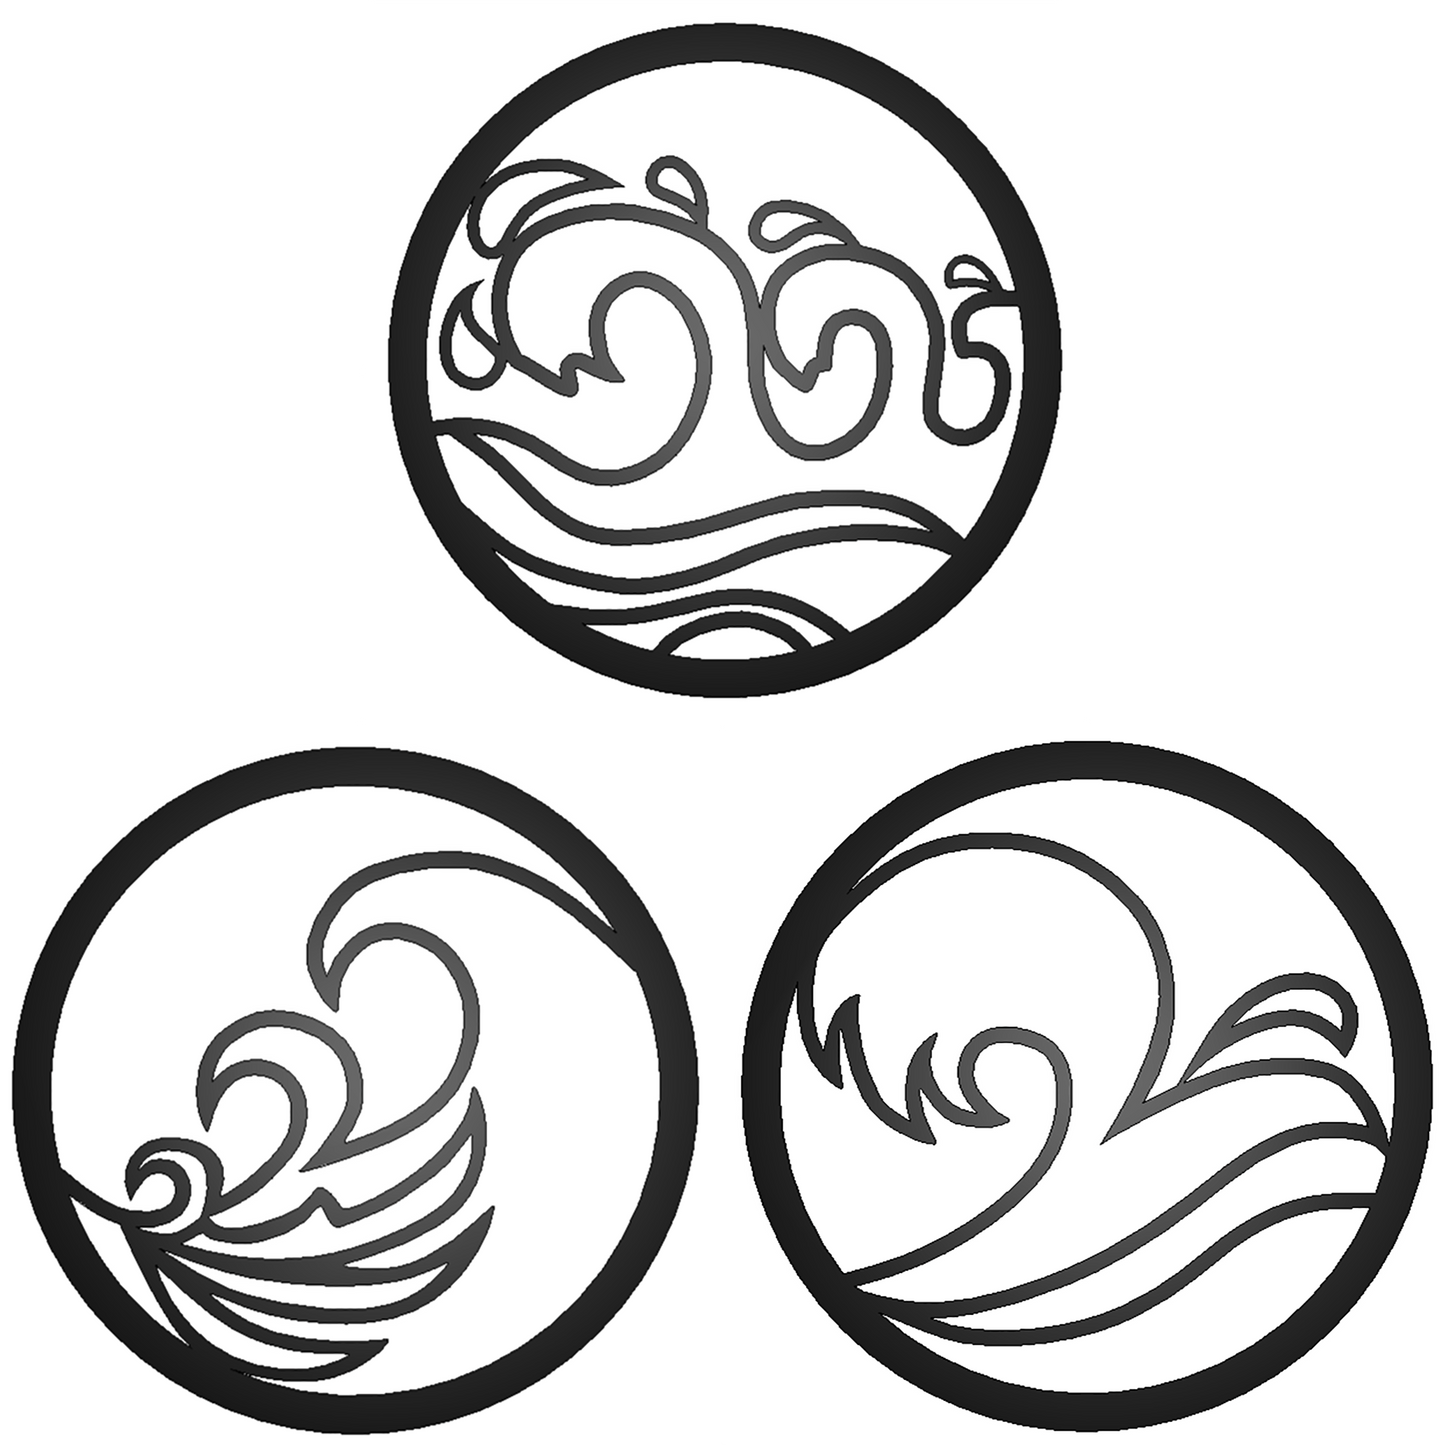 Waves -Set of 3 Metal Signs